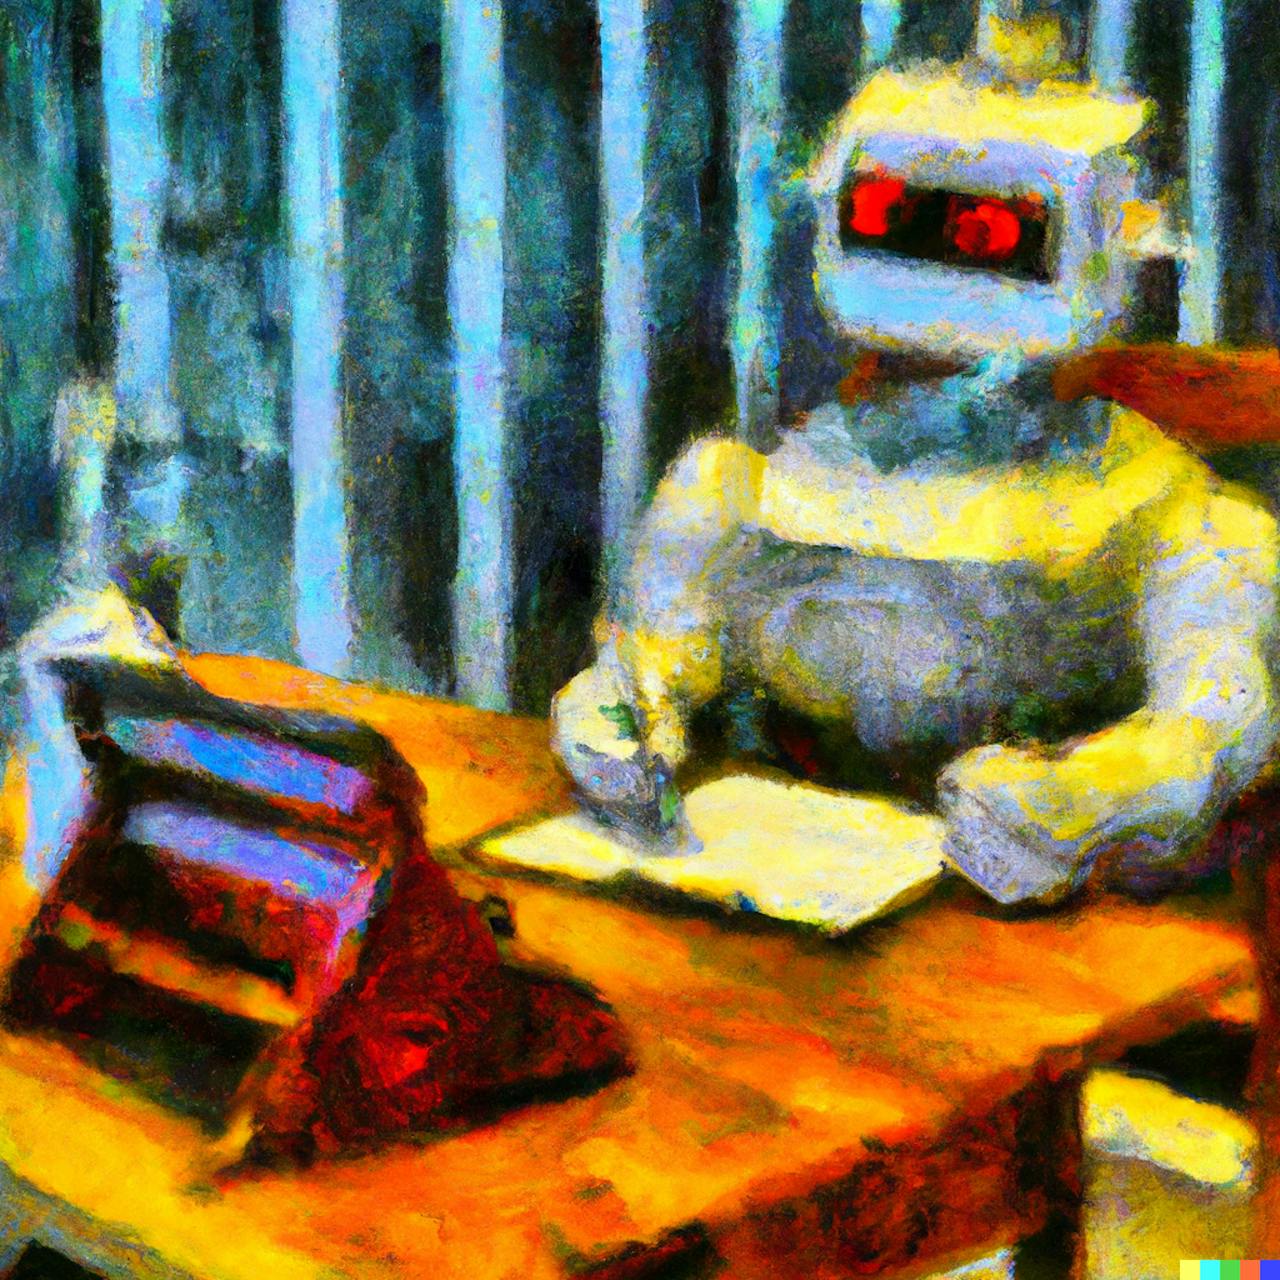 Een schilderij van een robot die aan een bureau zit.